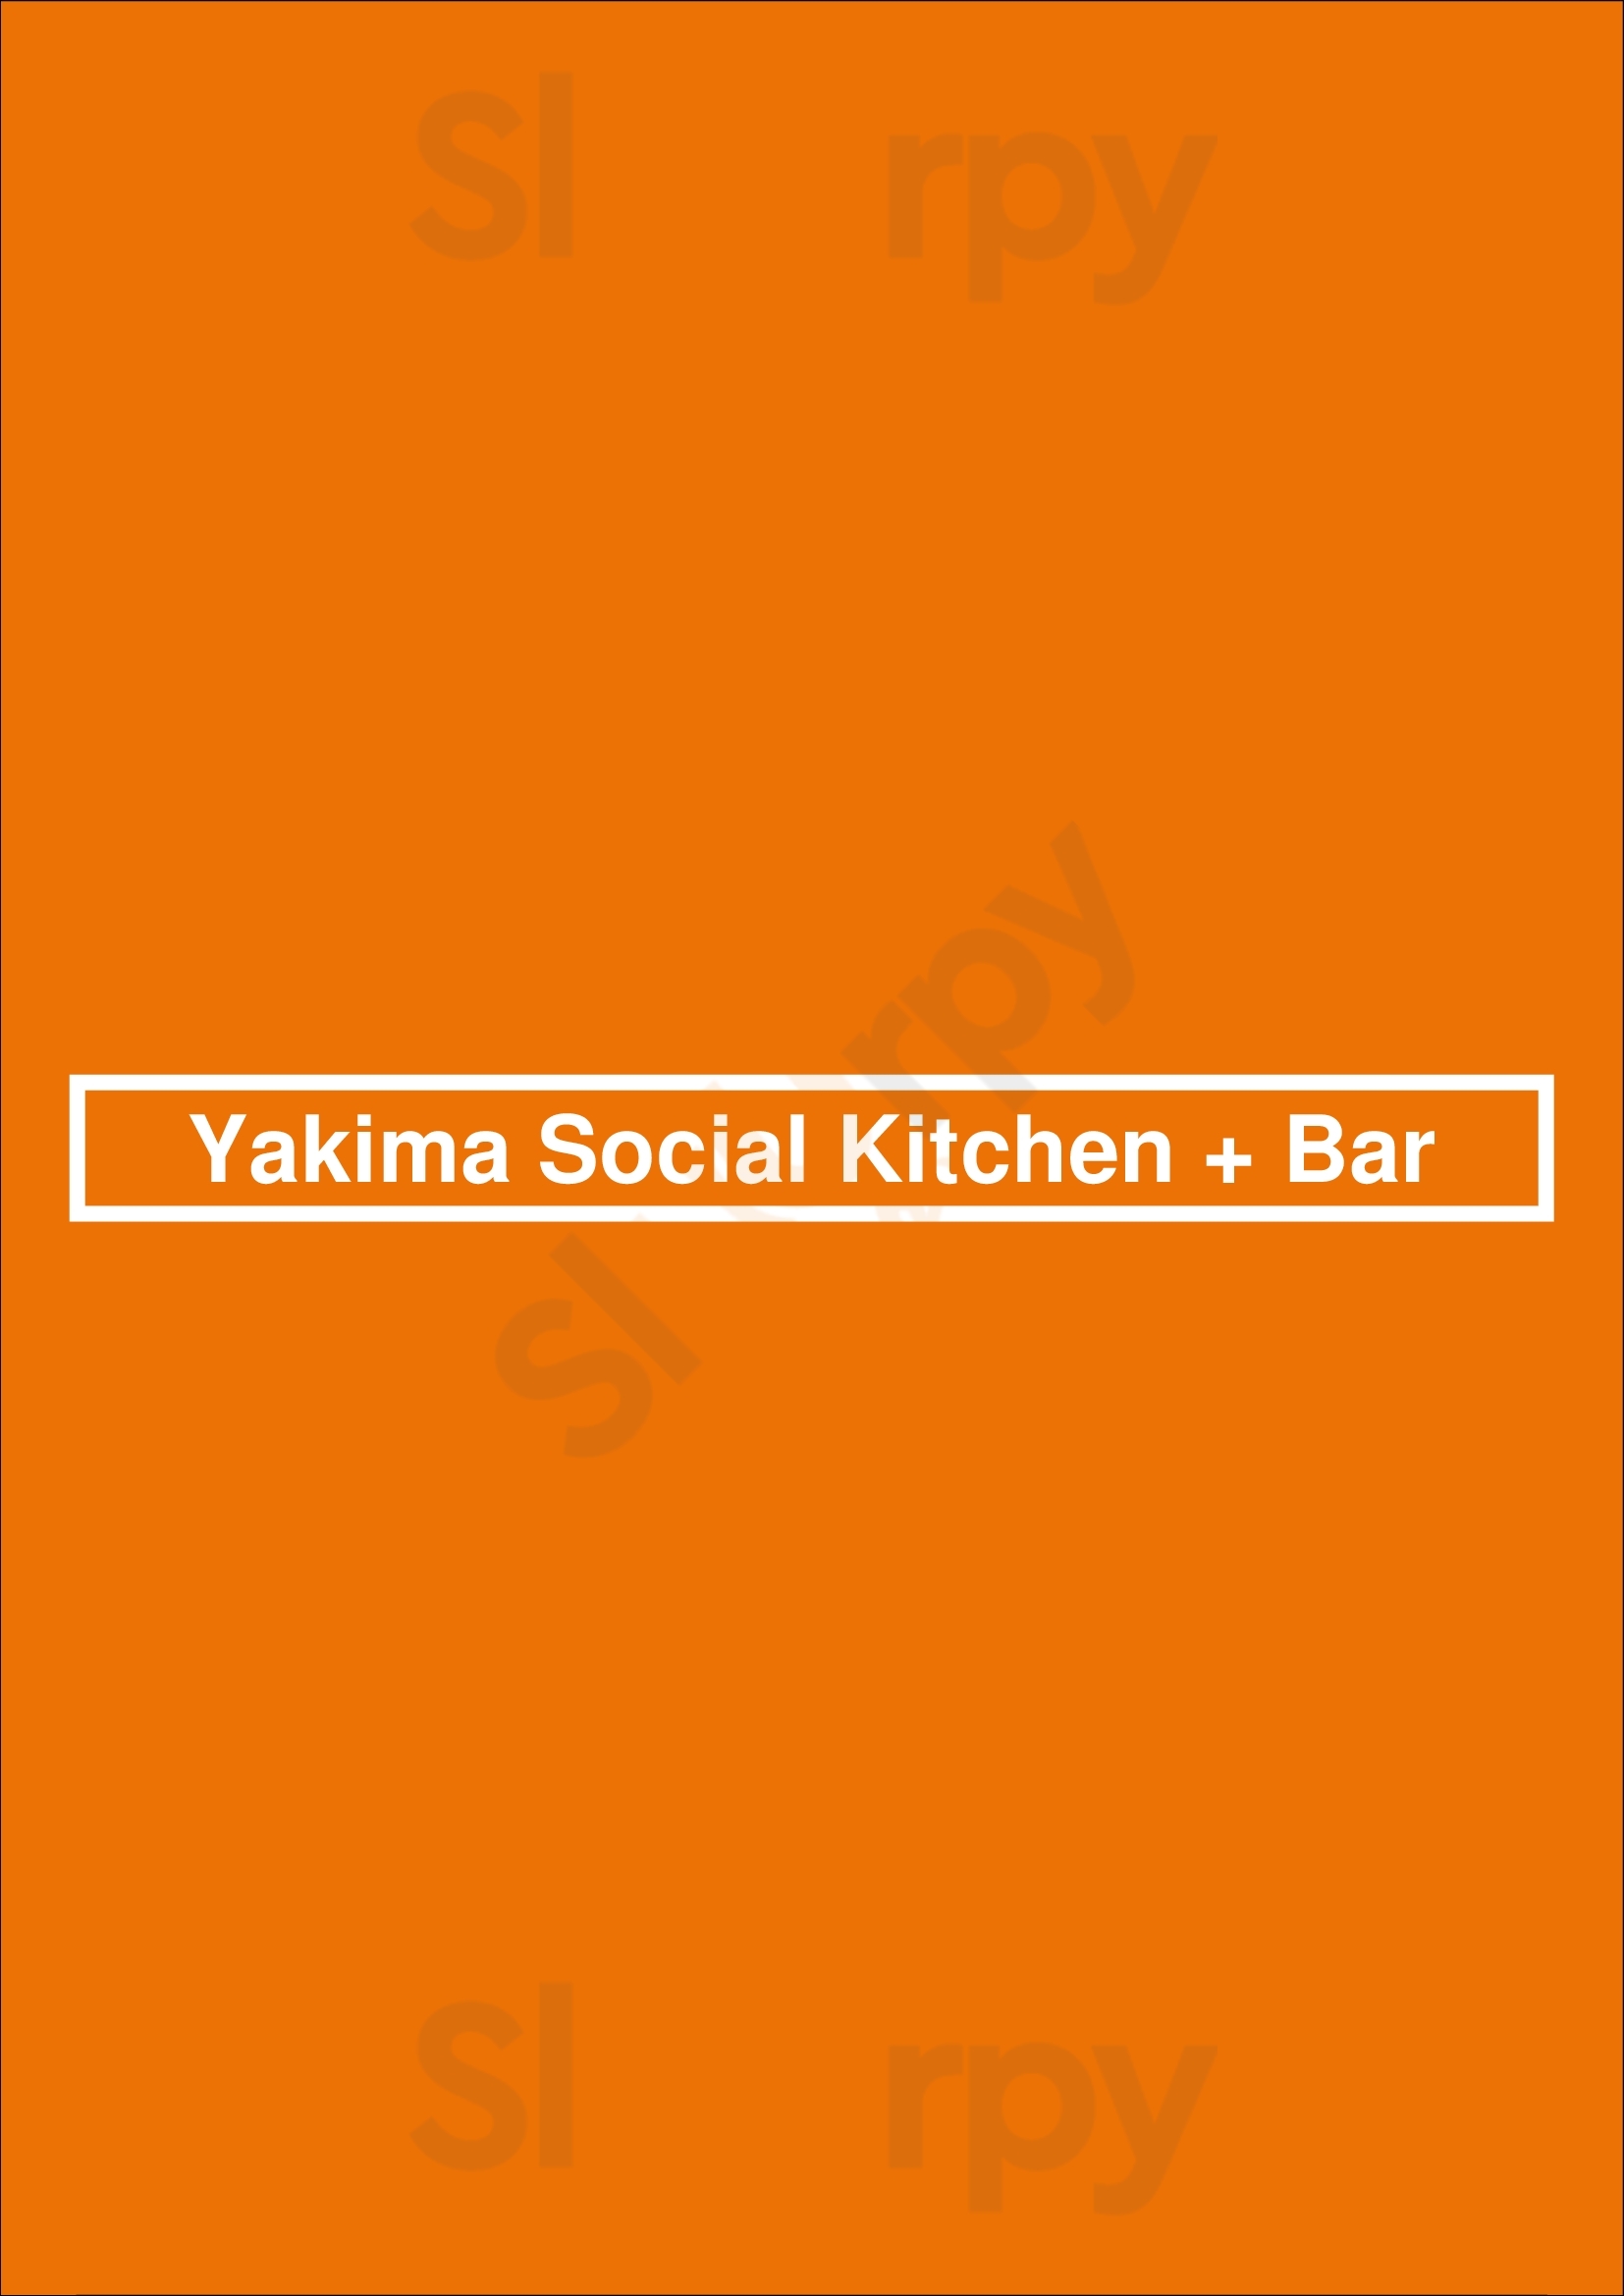 Yakima Social Kitchen + Bar Calgary Menu - 1